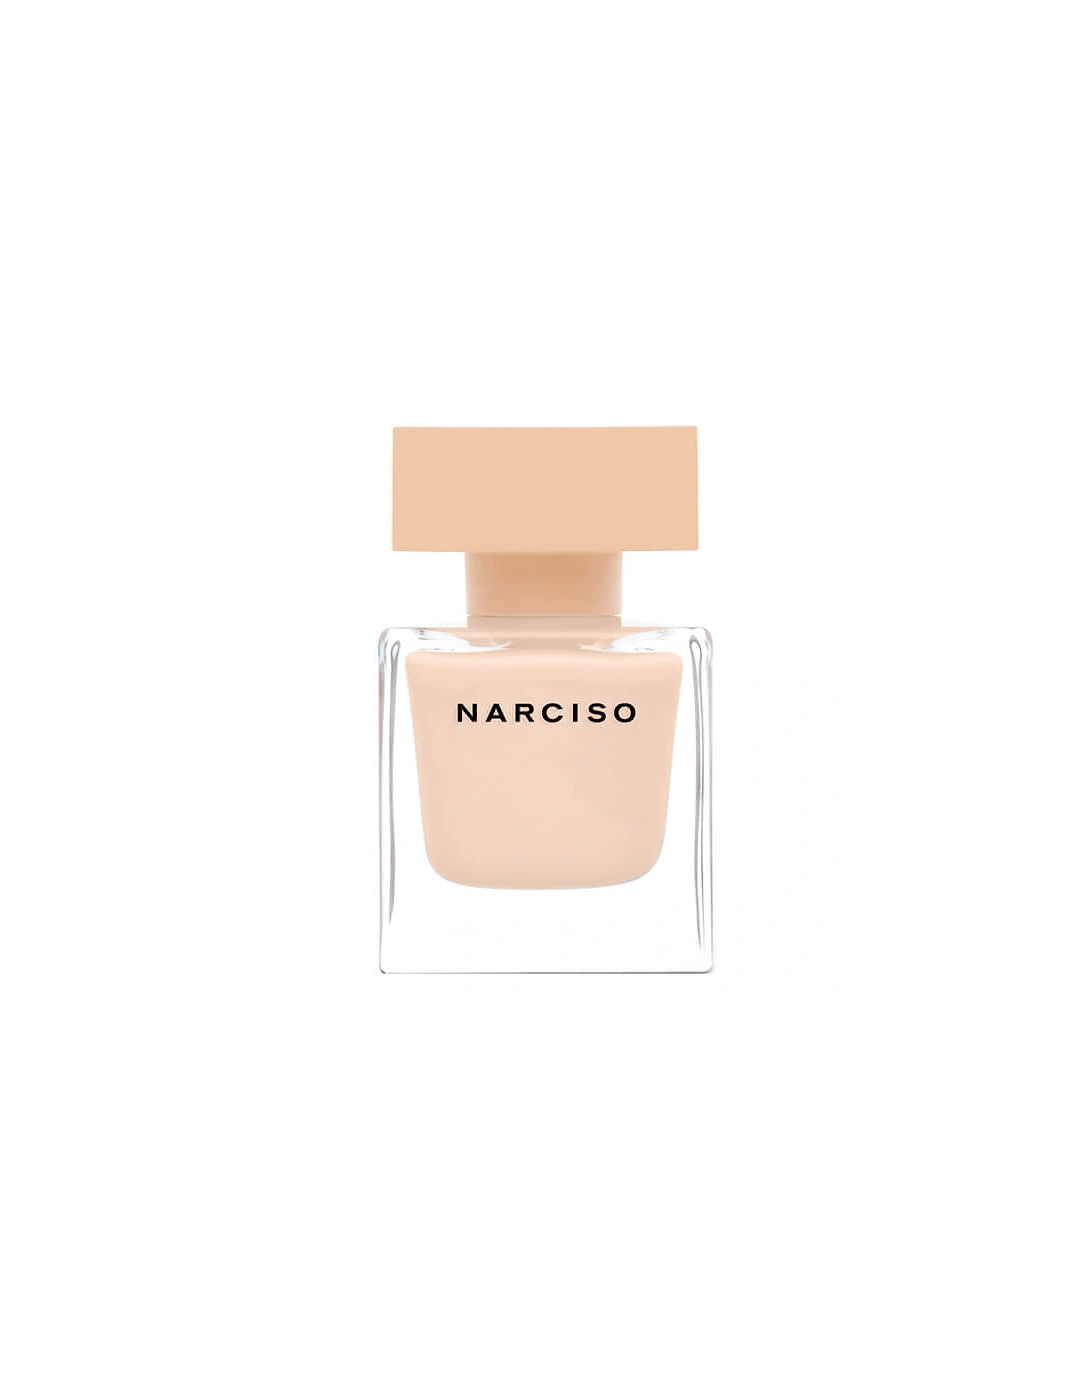 Narciso Poudrée Eau de Parfum - 50ml, 2 of 1